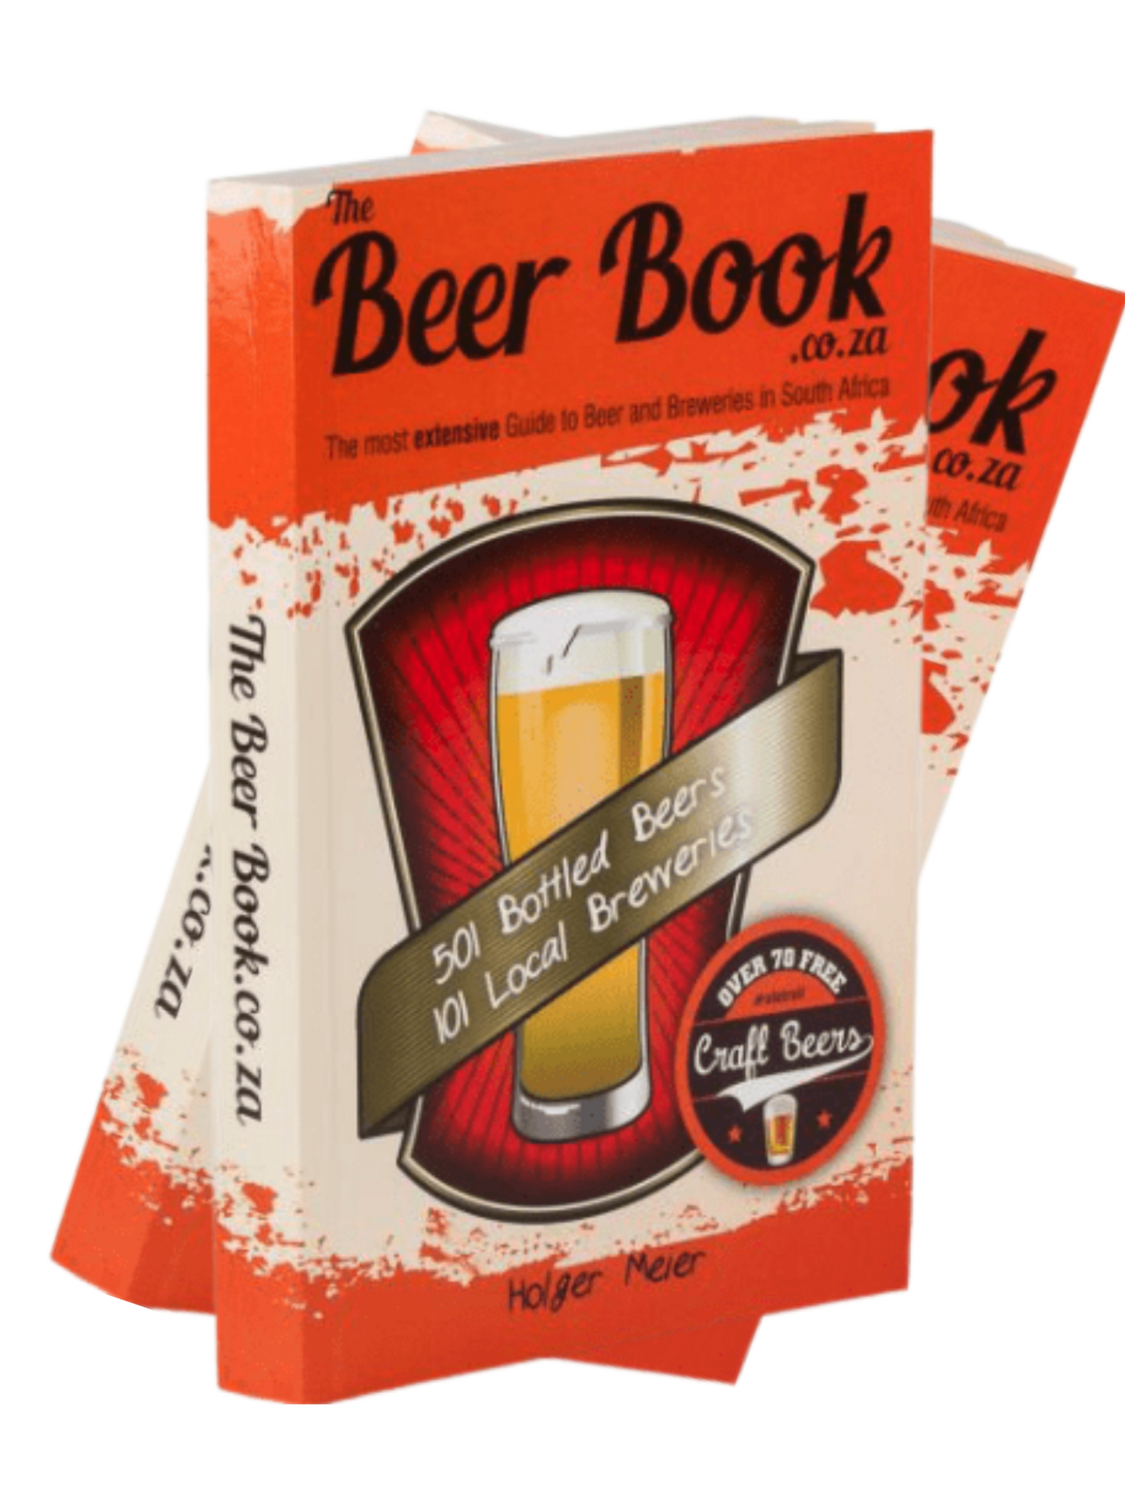 The Beer Book (2 copies)